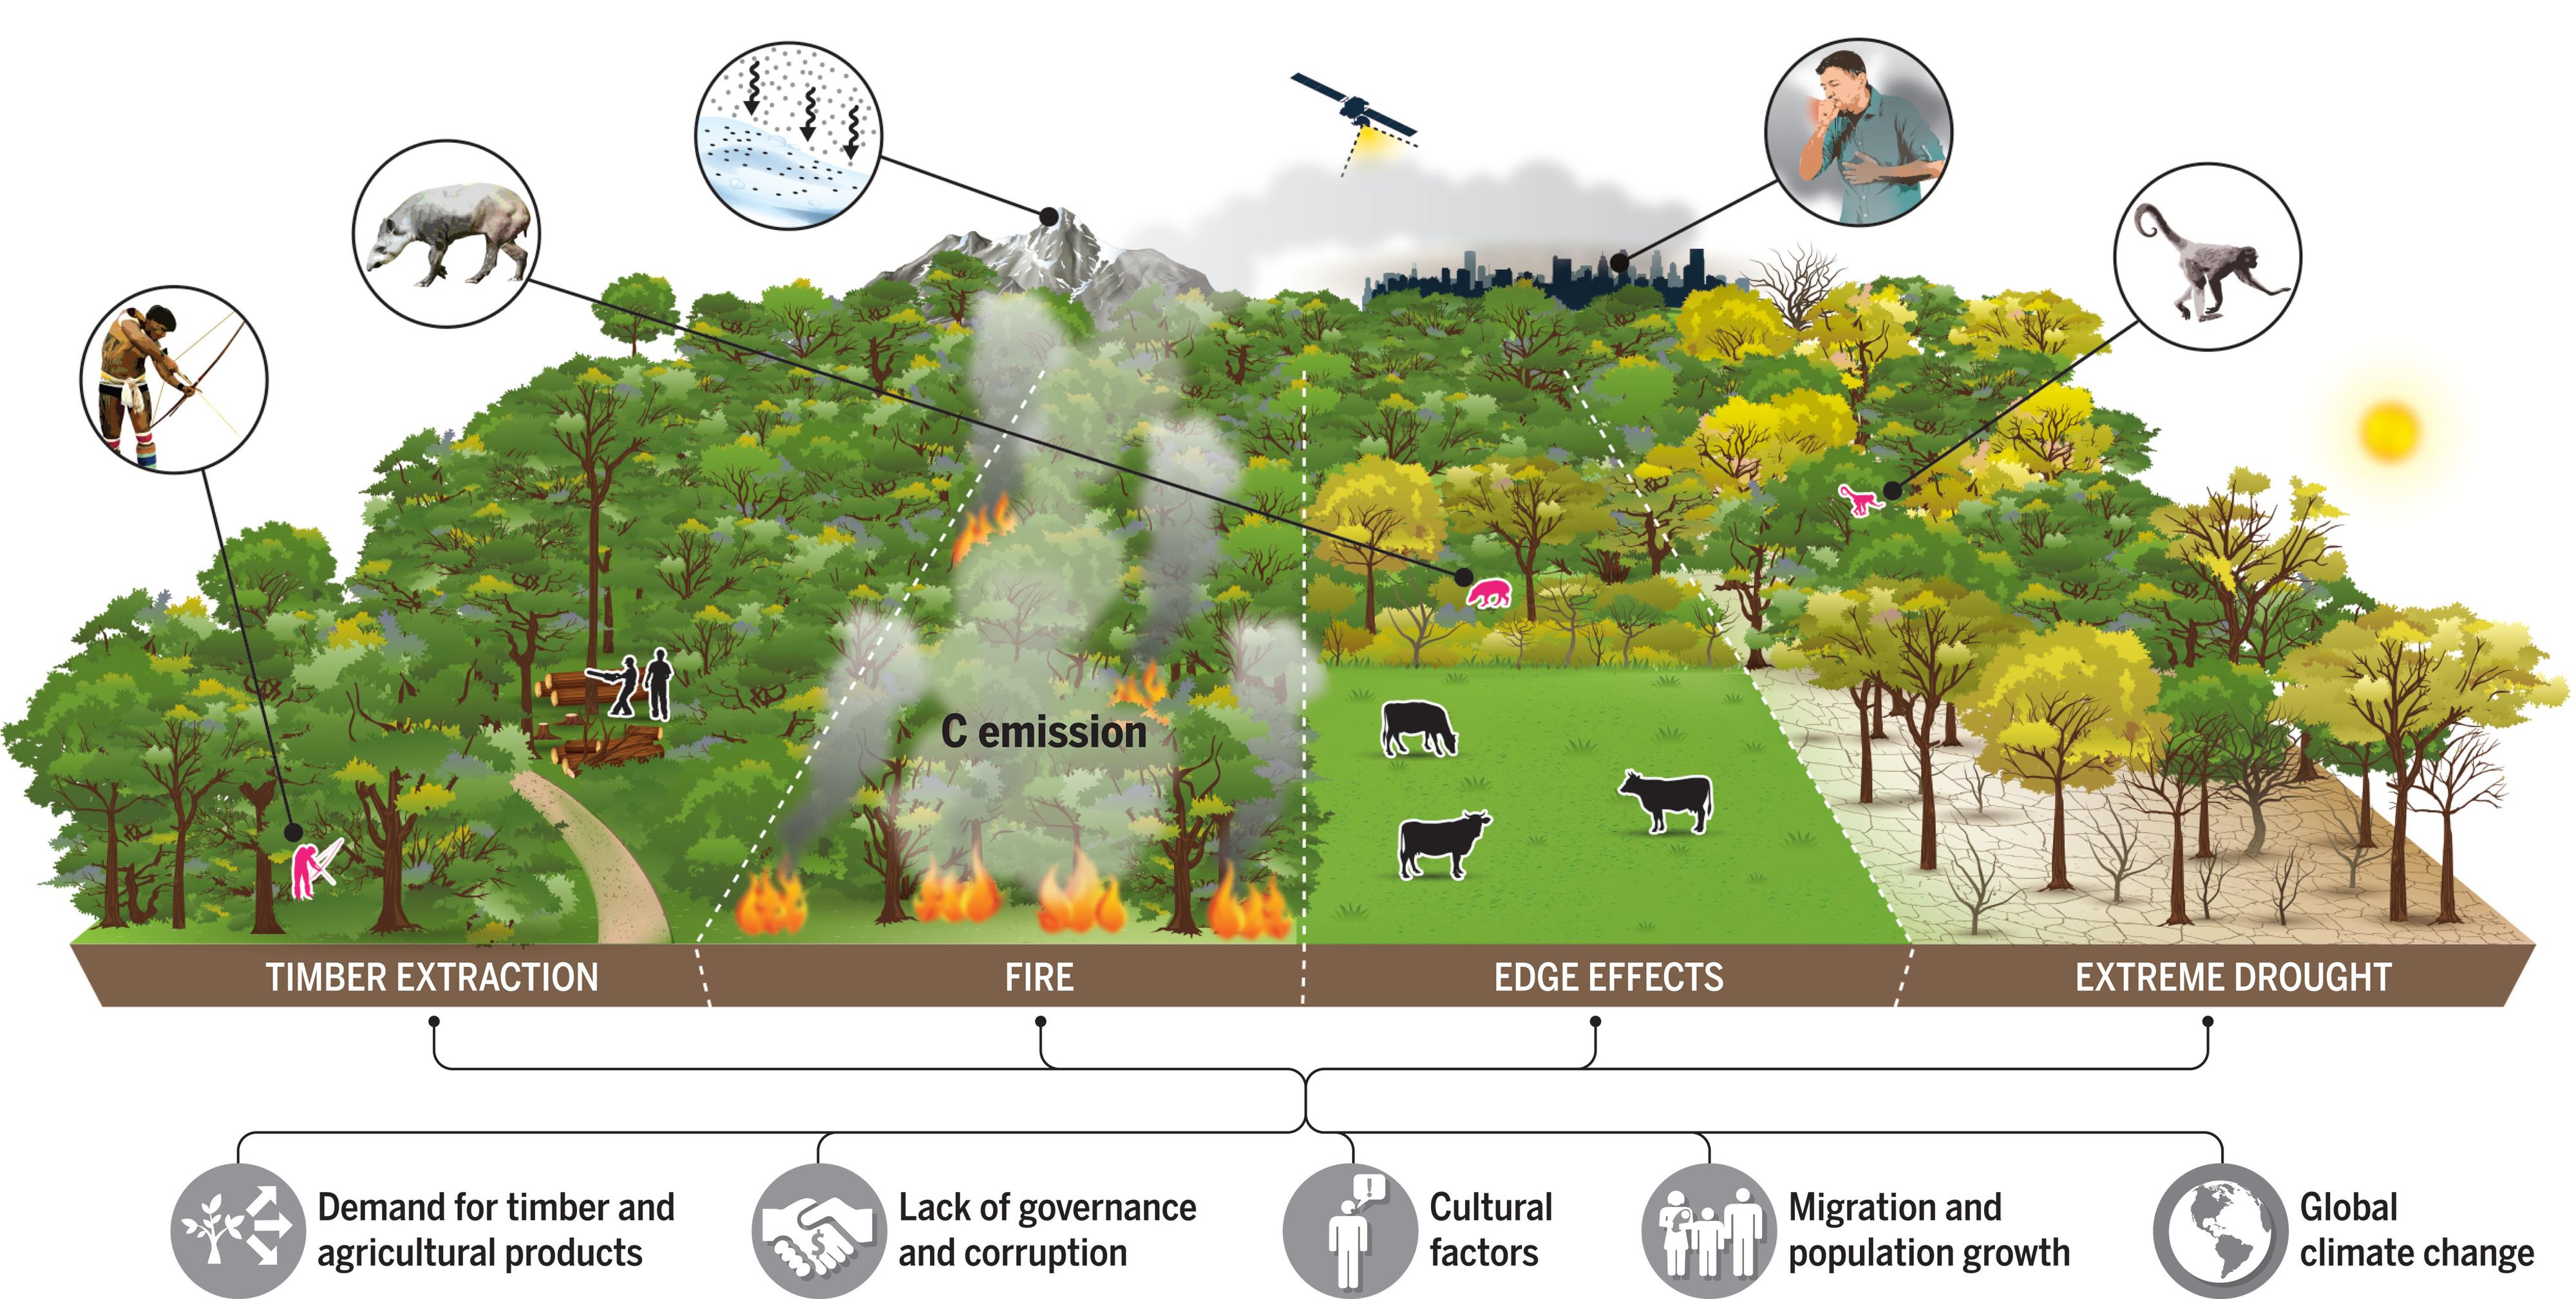 Les facteurs sous-jacents (dont quelques-uns sont représentés en gris en bas) stimulent les perturbations – extraction de bois, incendie, effets de lisière et sécheresse extrême – qui provoquent la dégradation des forêts. Un satellite illustre les tentatives d'estimation de l'étendue spatiale de la dégradation et des pertes de carbone associées. Les impacts (en rouge) sont soit locaux: provoquant des pertes de biodiversité ou affectant les moyens de subsistance des habitants des forêts; soit éloignés: par exemple, la fumée affectant la santé des habitants des villes ou provoquant la fonte des glaciers andins en raison du dépôt de carbone noir. [Science - Alex Argozino/Studio Argozino]